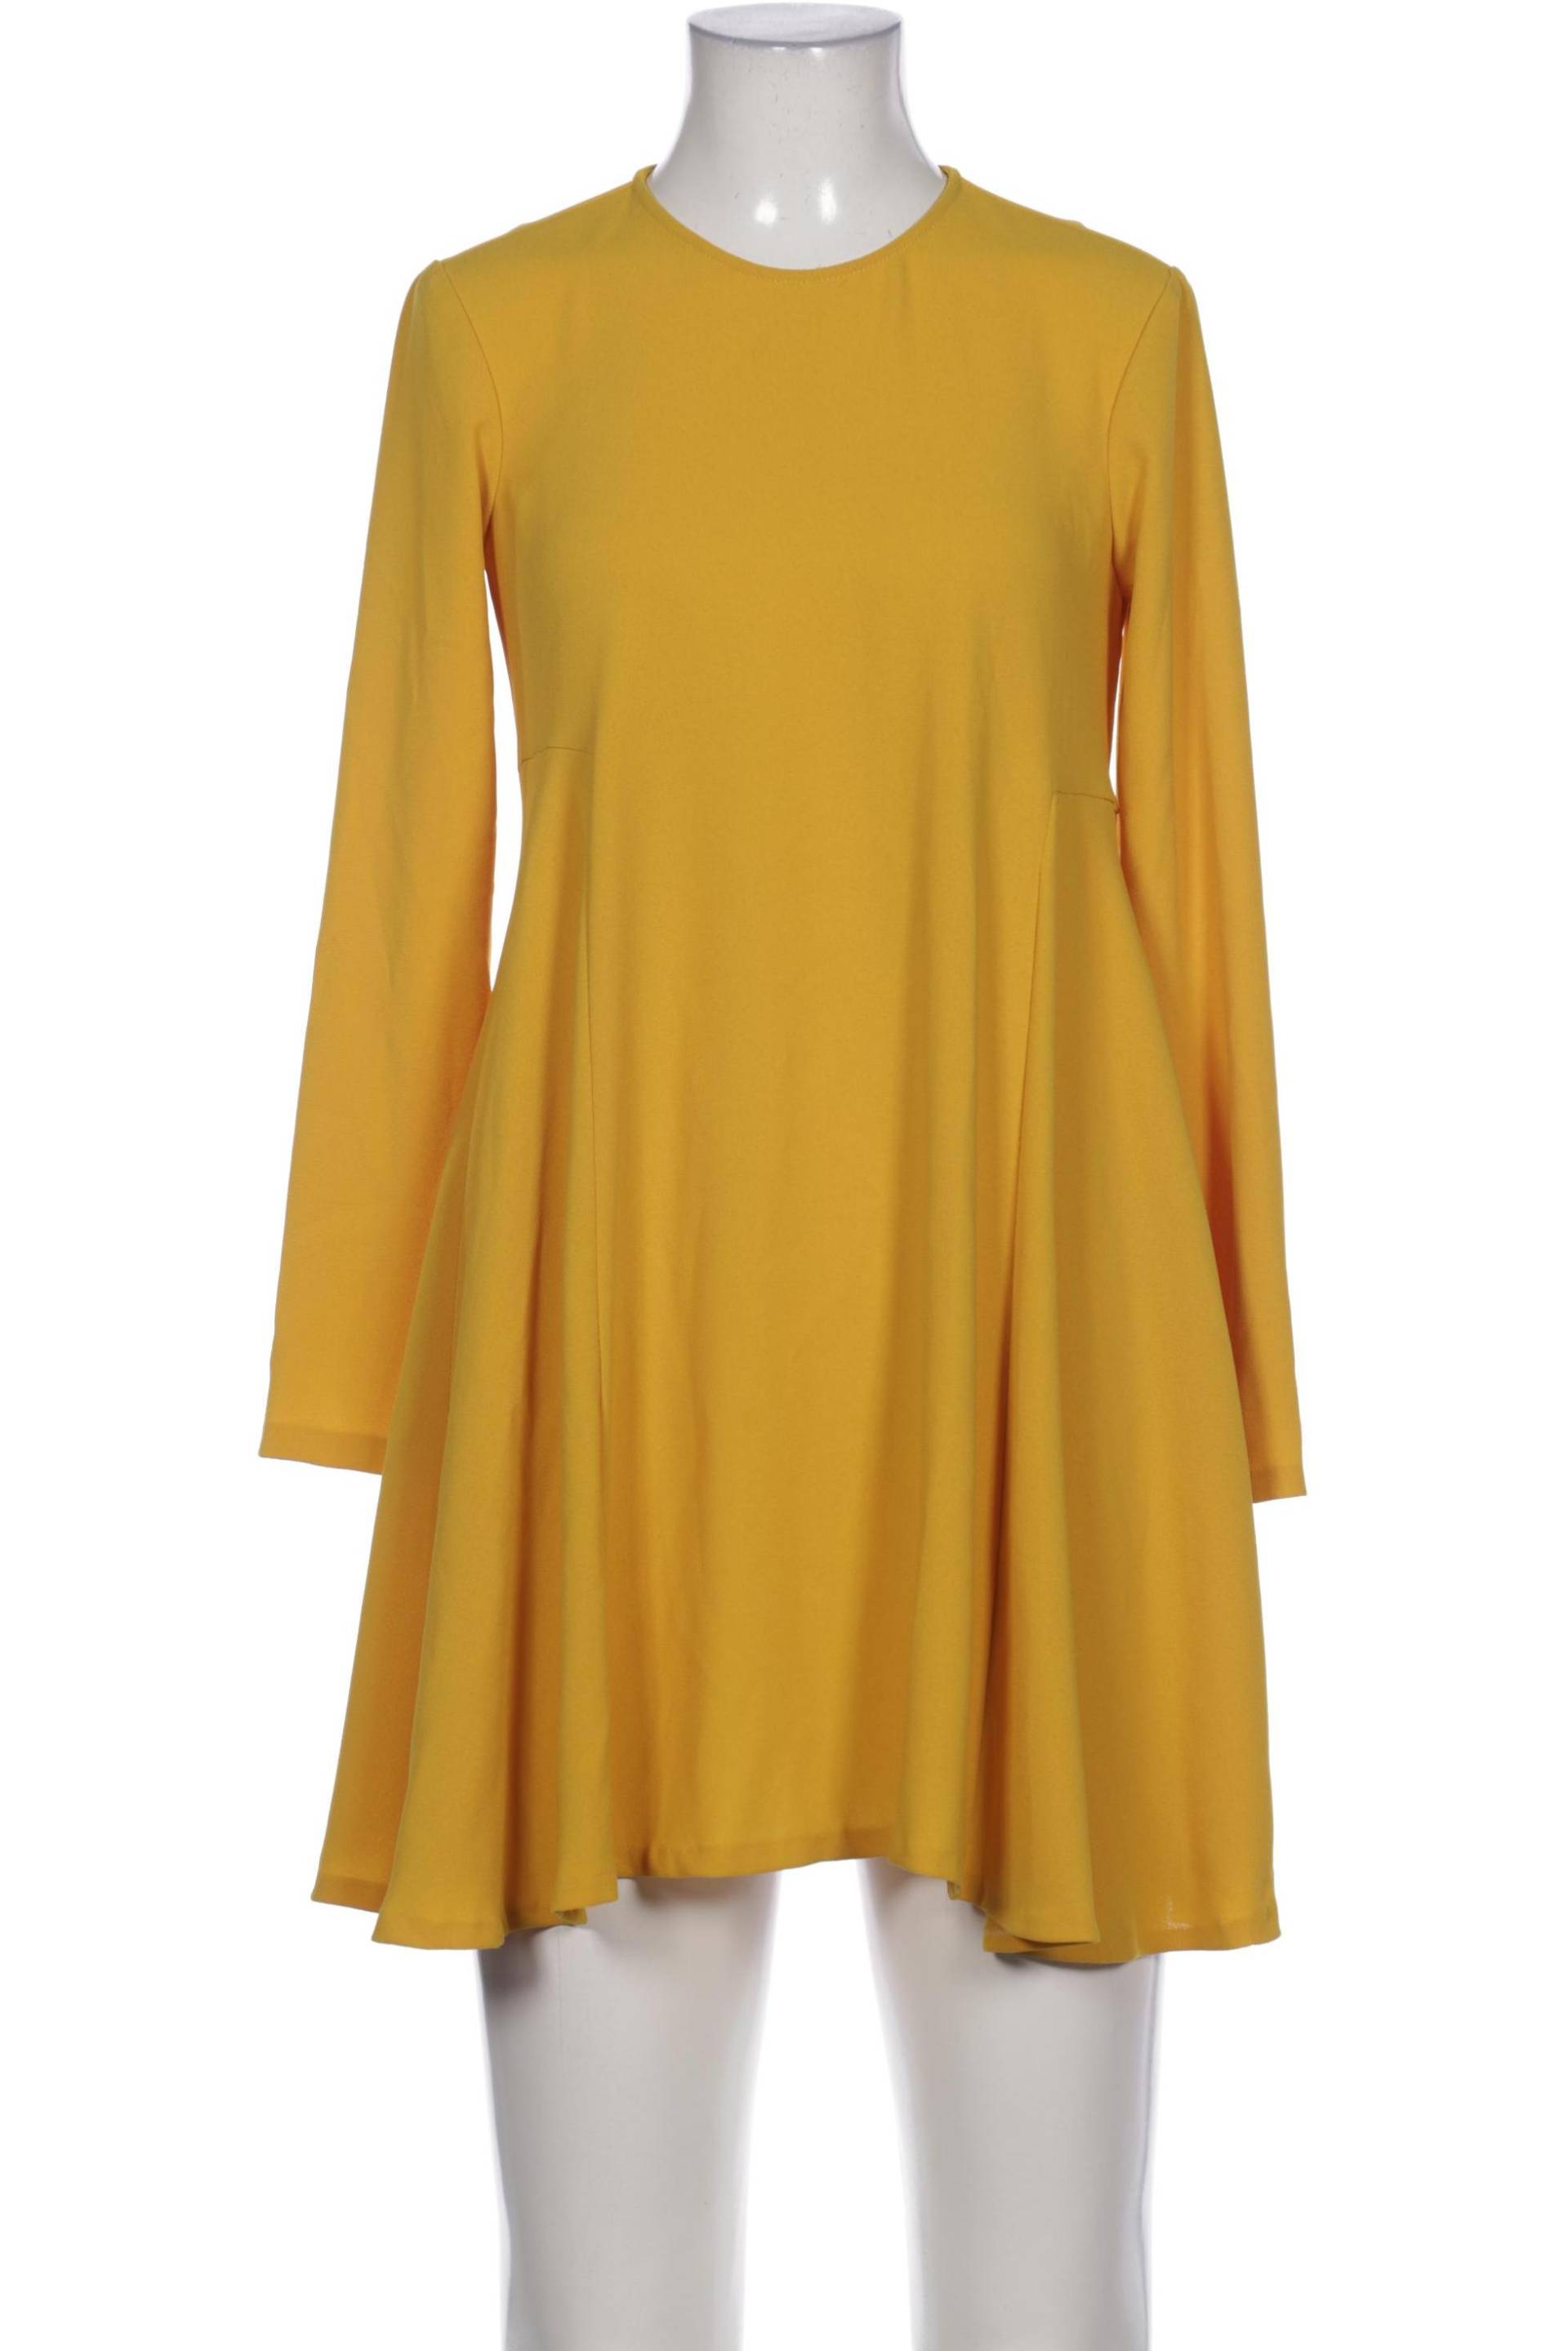 ZARA Damen Kleid, gelb von ZARA